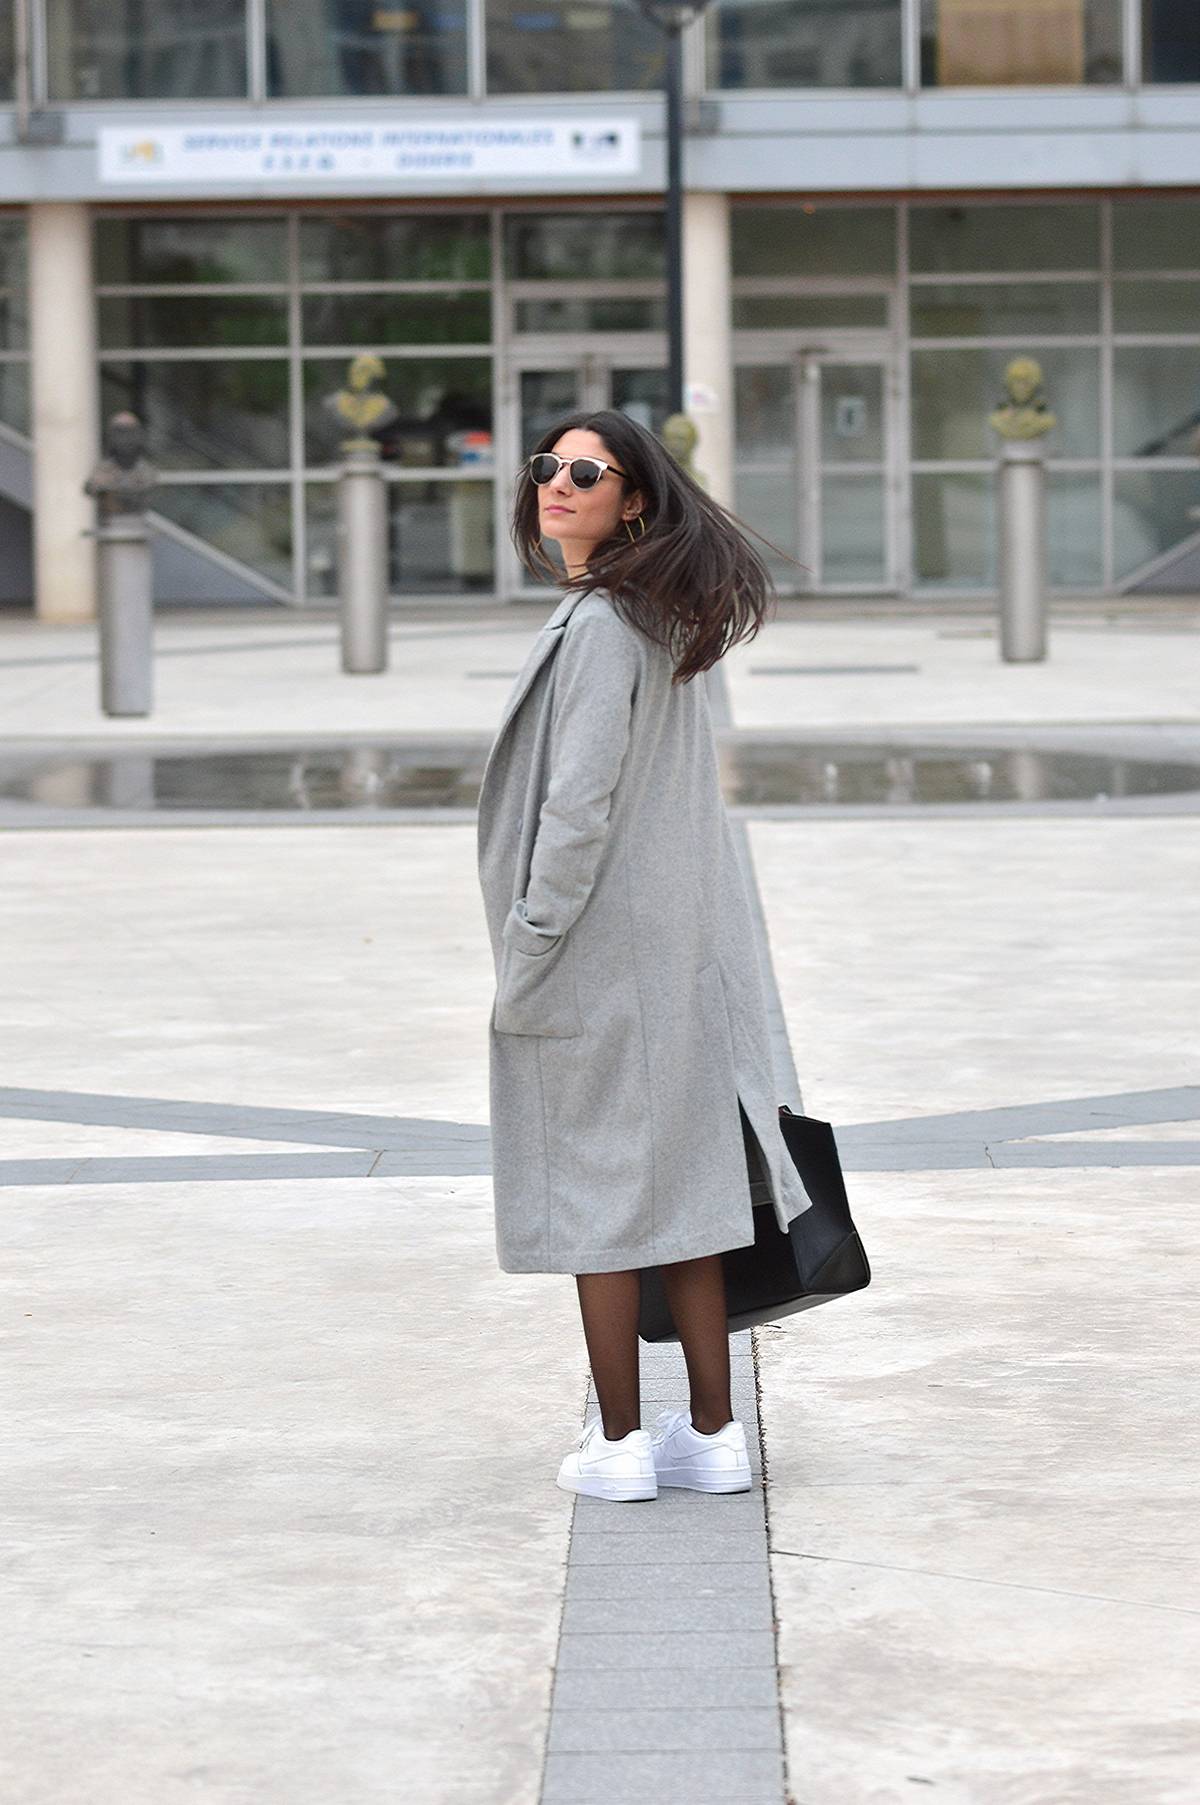 manteau gris tendance hiver 2016 blog mode tenue look